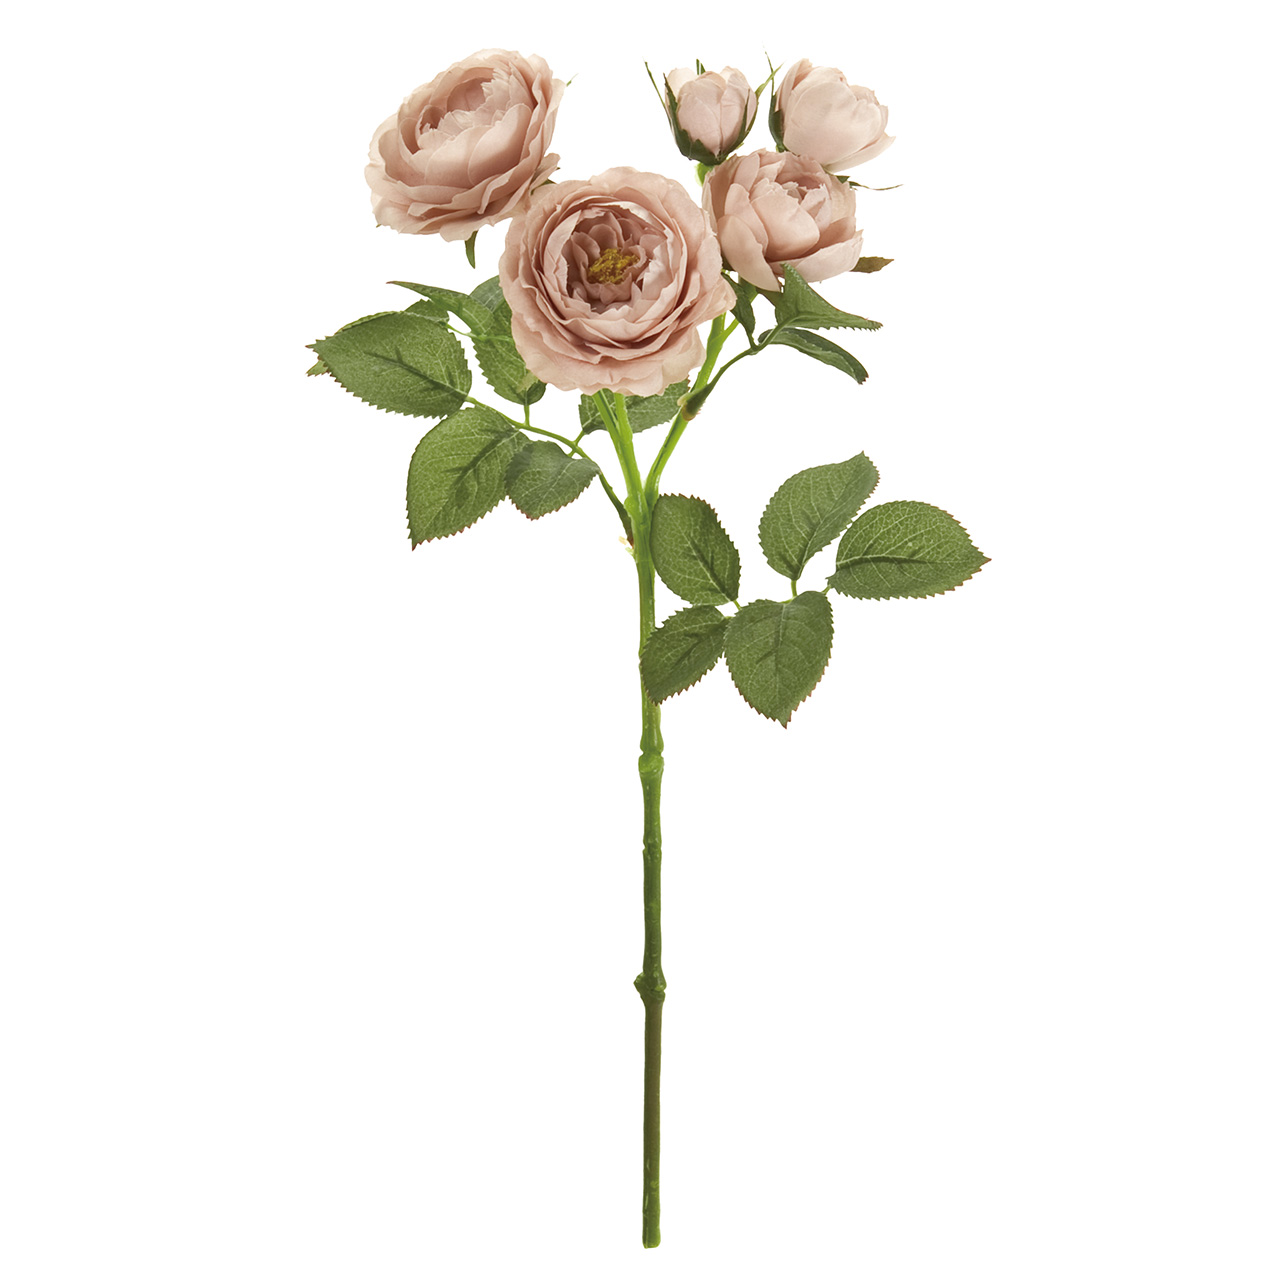 マイフラ】 通販/MAGIQ エクリュメリンダローズ アンティークピンク アーティフィシャルフラワー 造花 FM000154-002 バラ(アンティークピンク):  MAGIQ(アーティフィシャルフラワー 造花)/全国にMAGIQ、花器、花資材などをお届けします。